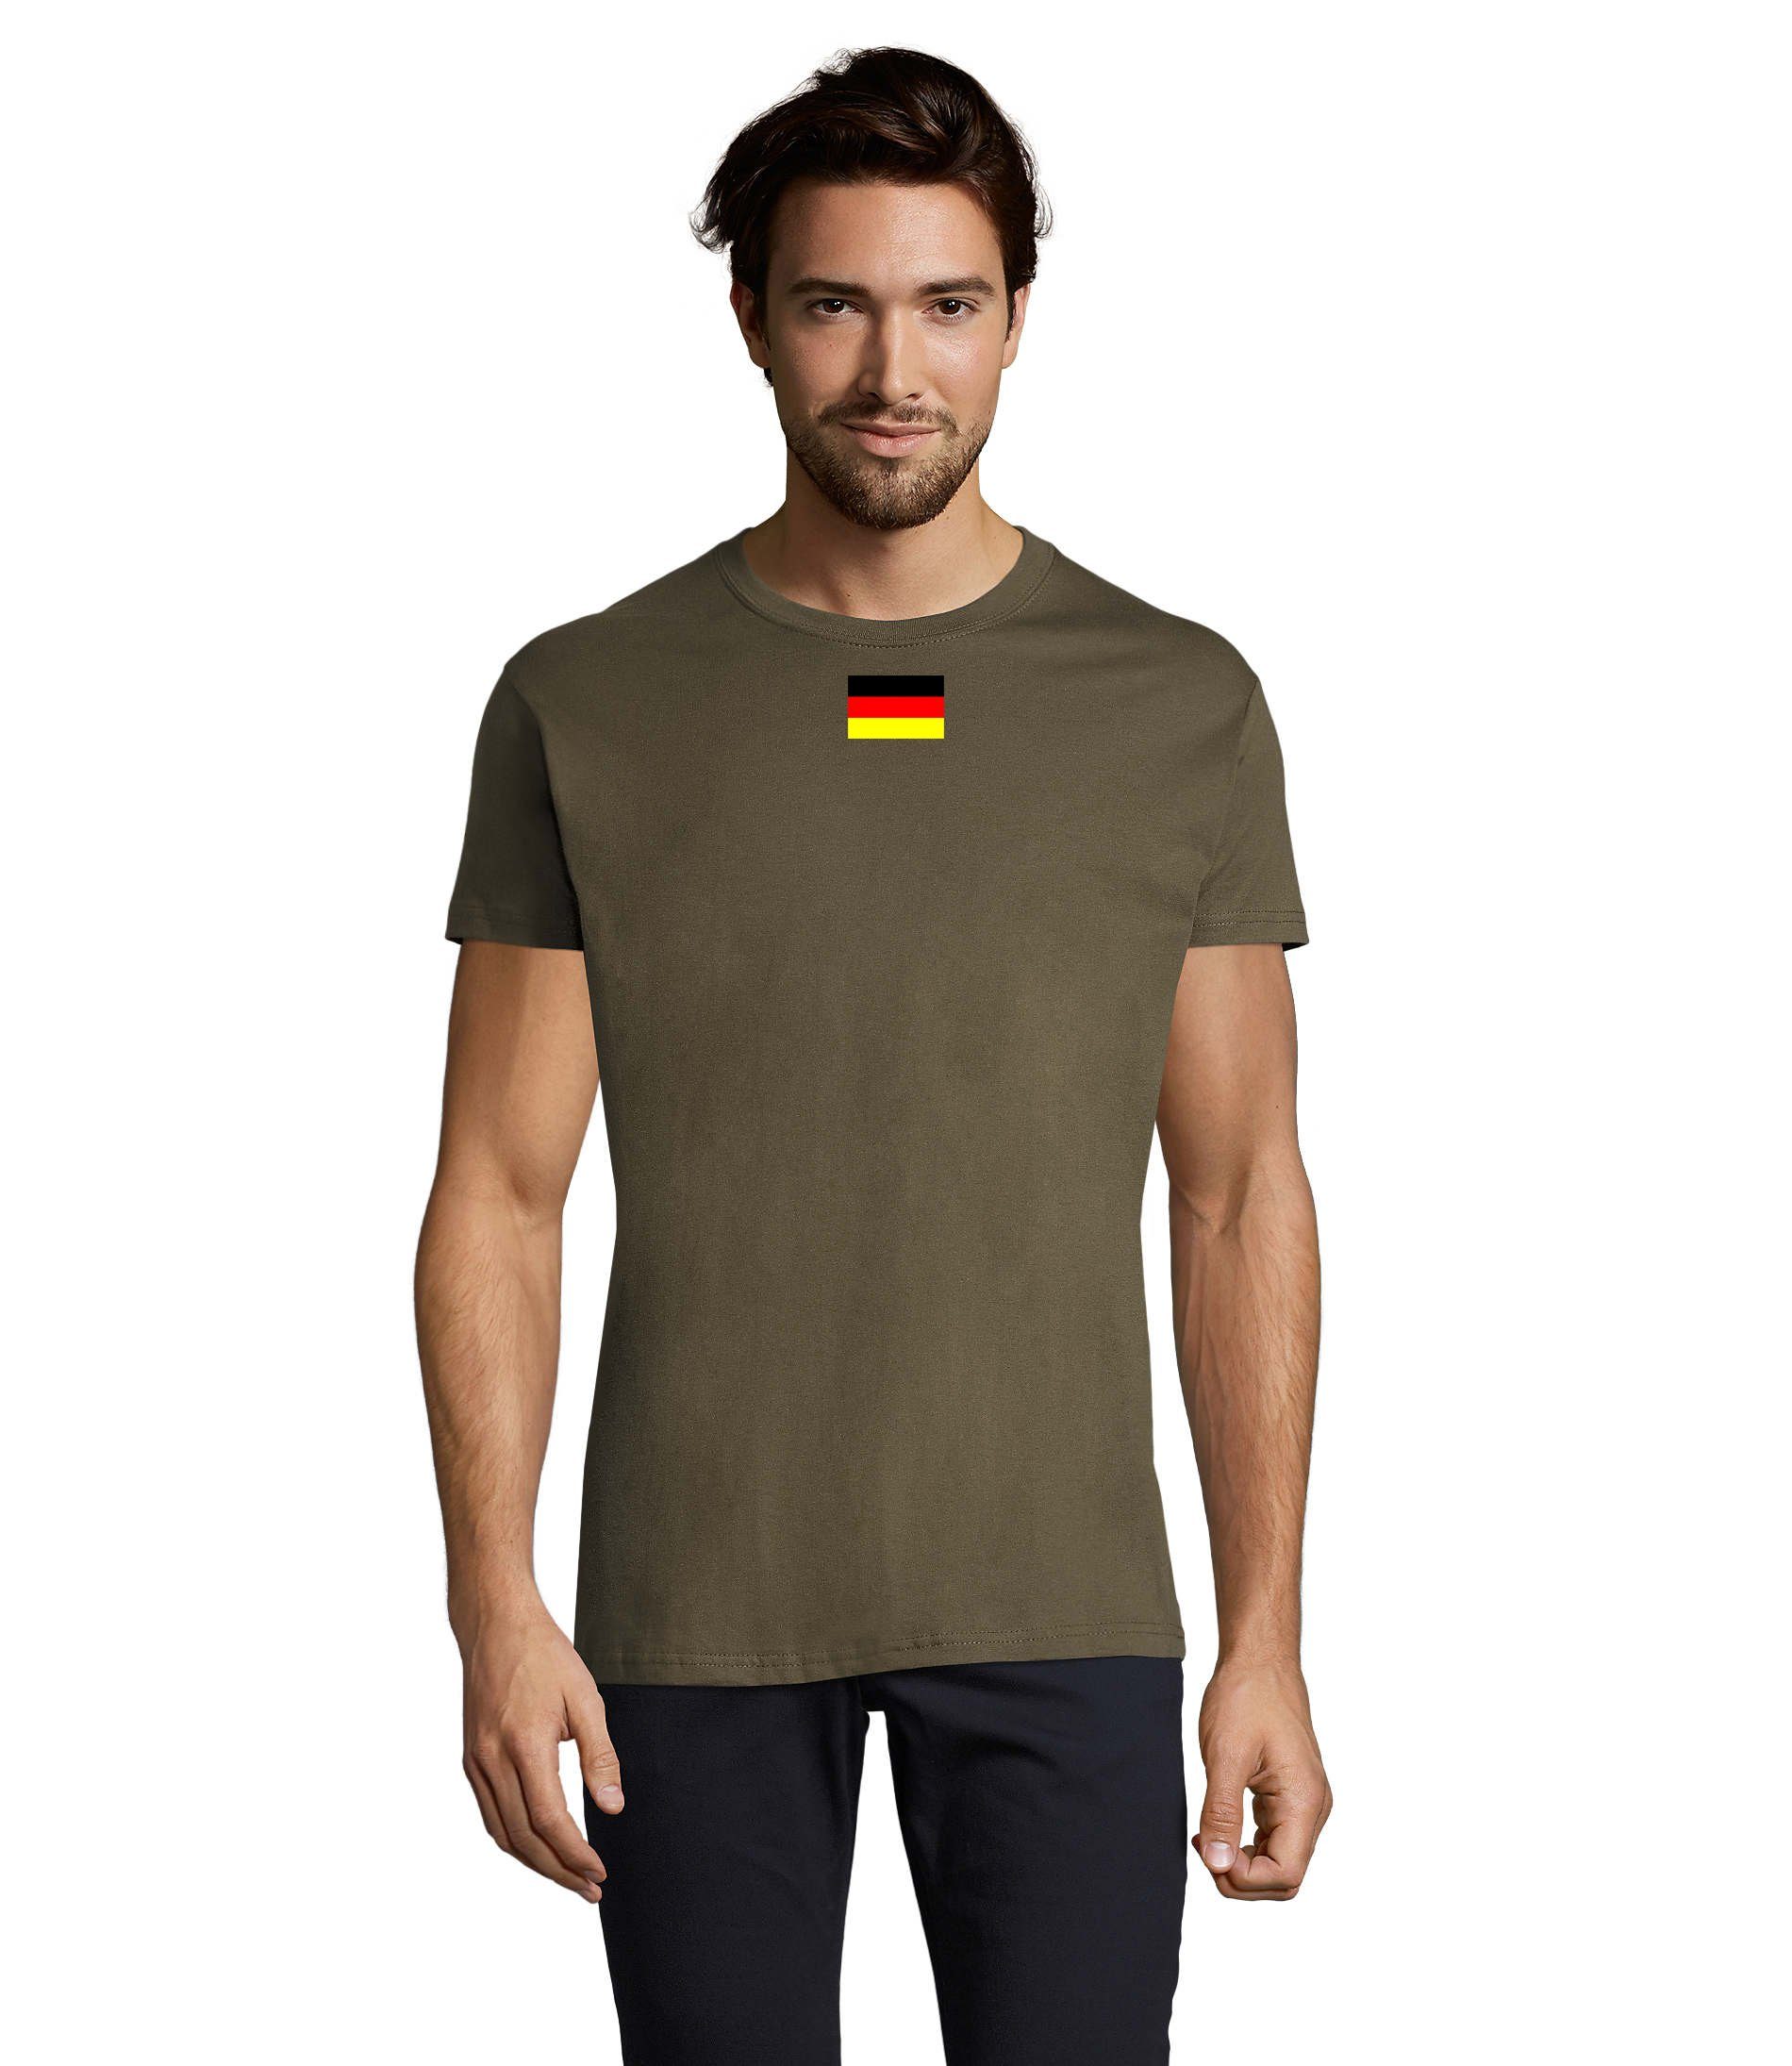 Armee Army Brownie Nato Deutschland Blondie Herren Germany USA & T-Shirt Ukraine Nation